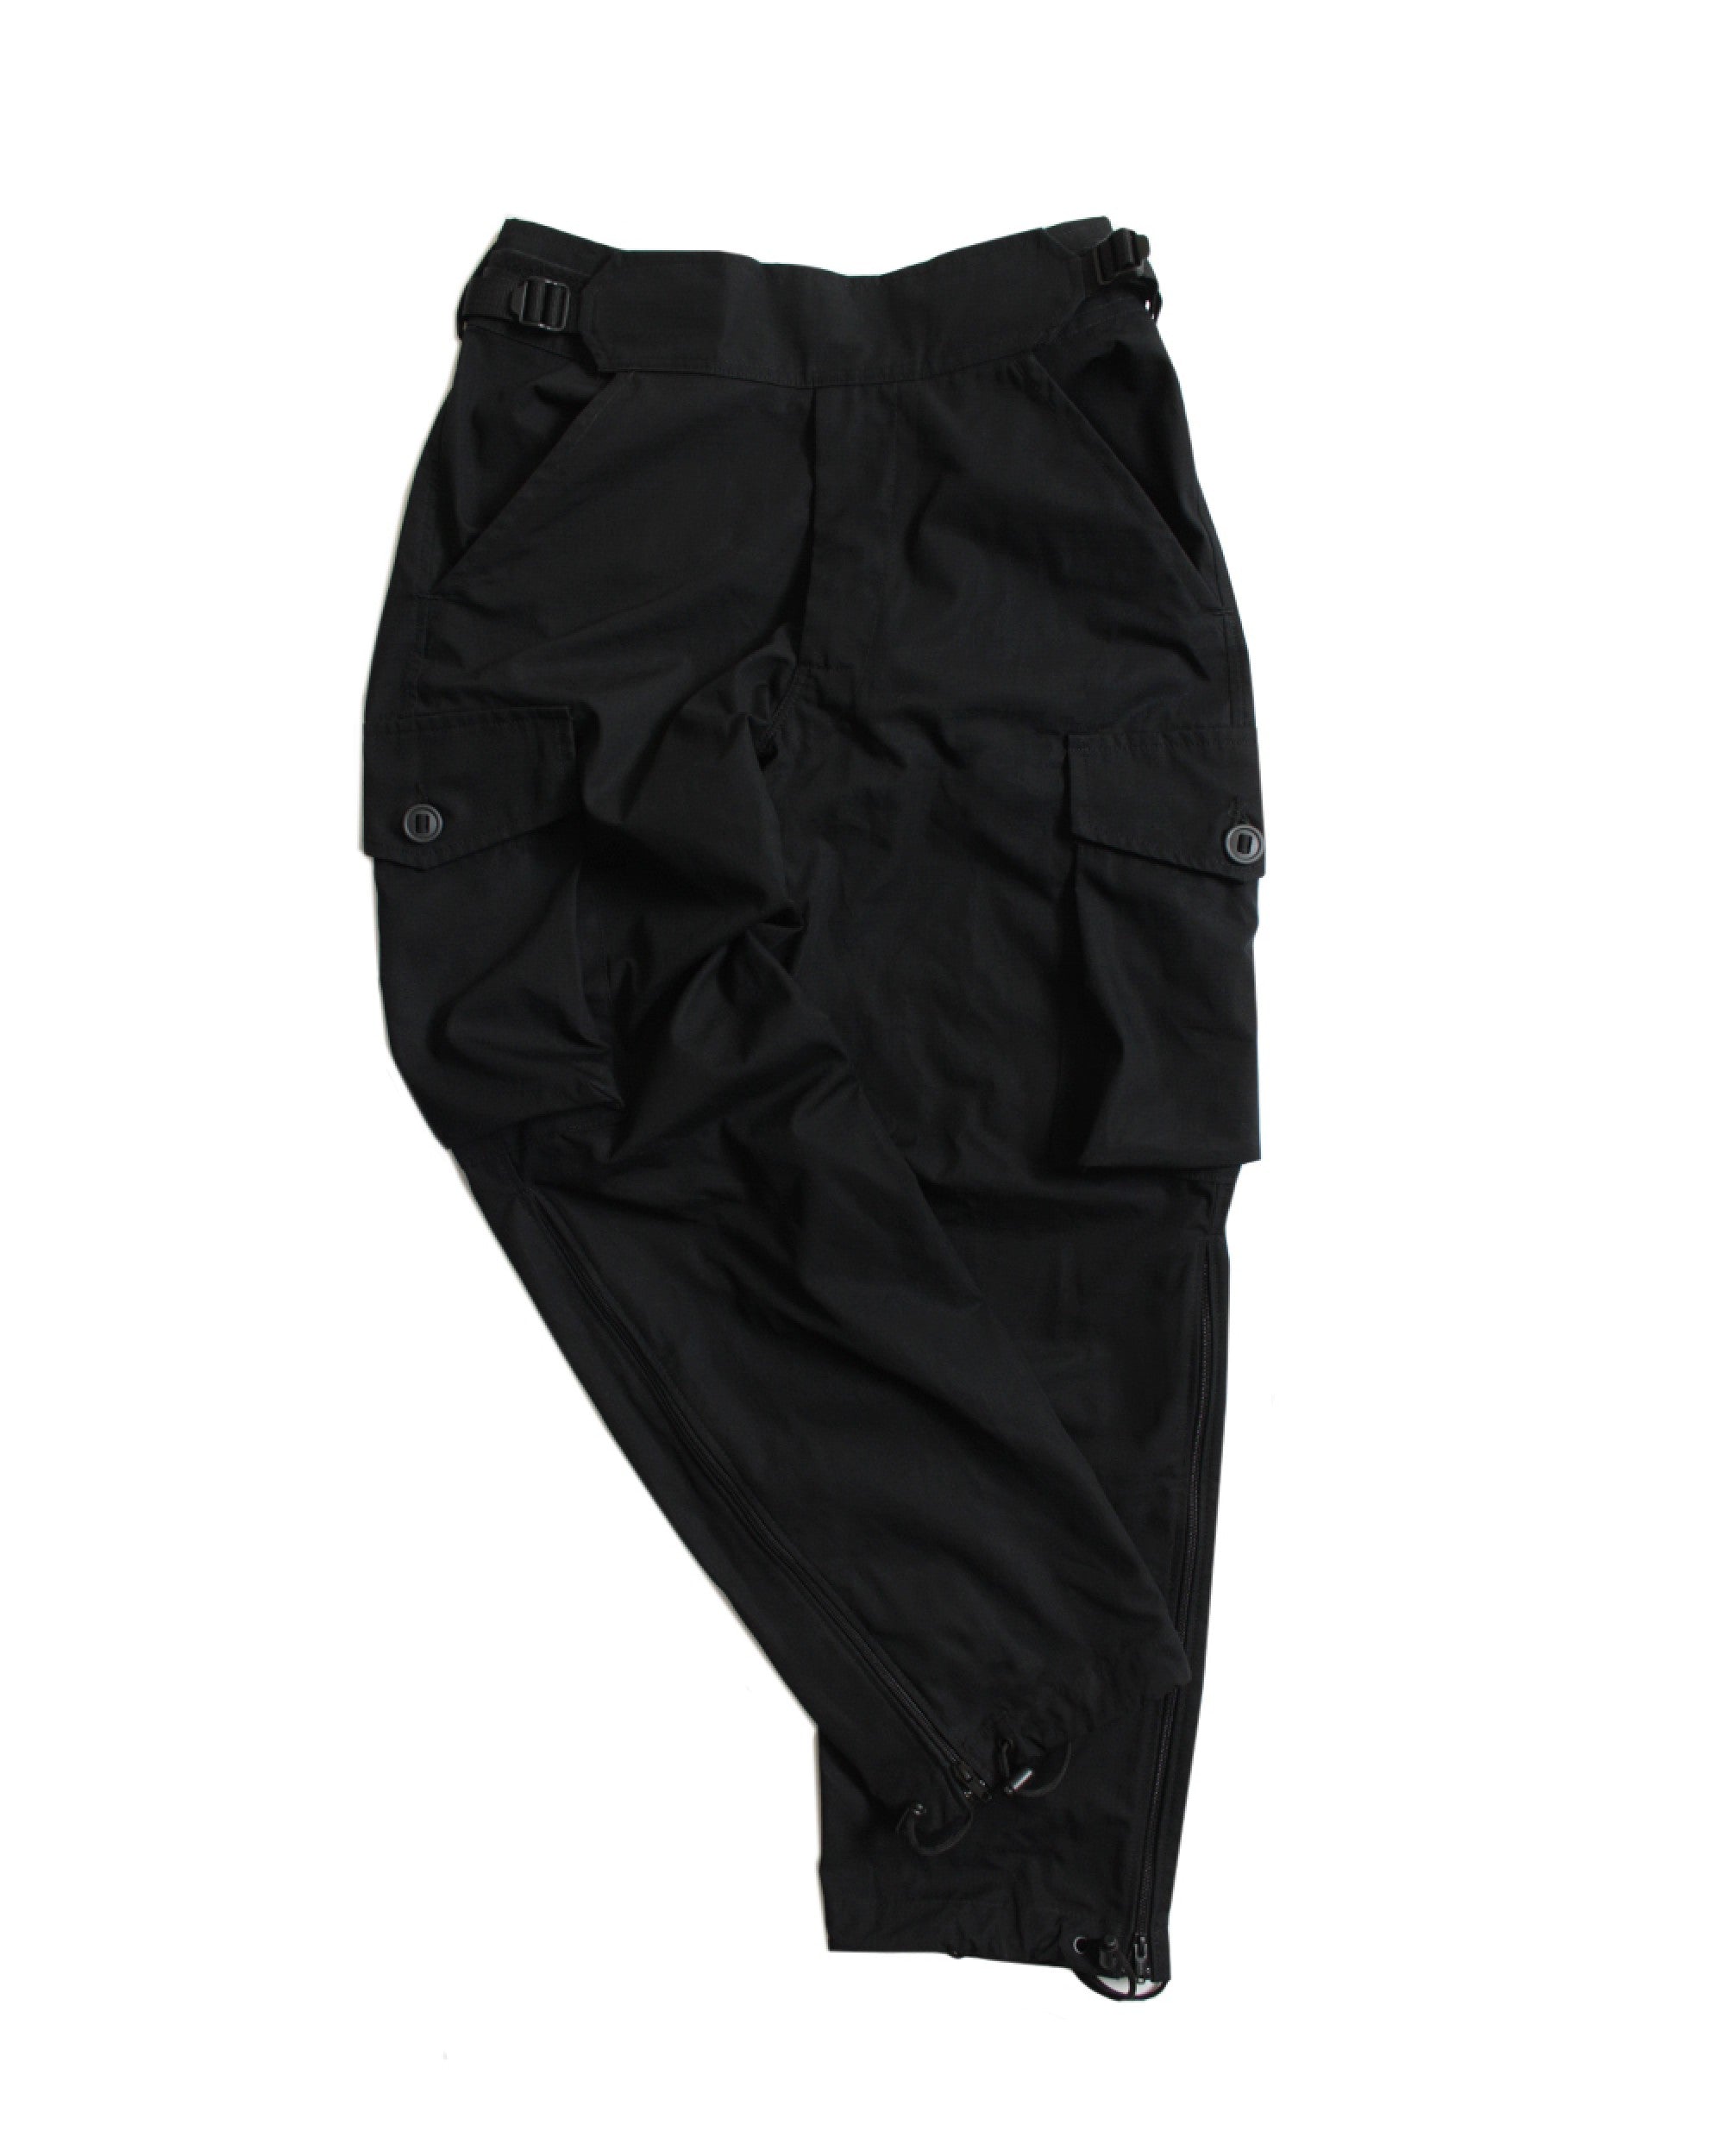 C111 Combat Trousers - Black